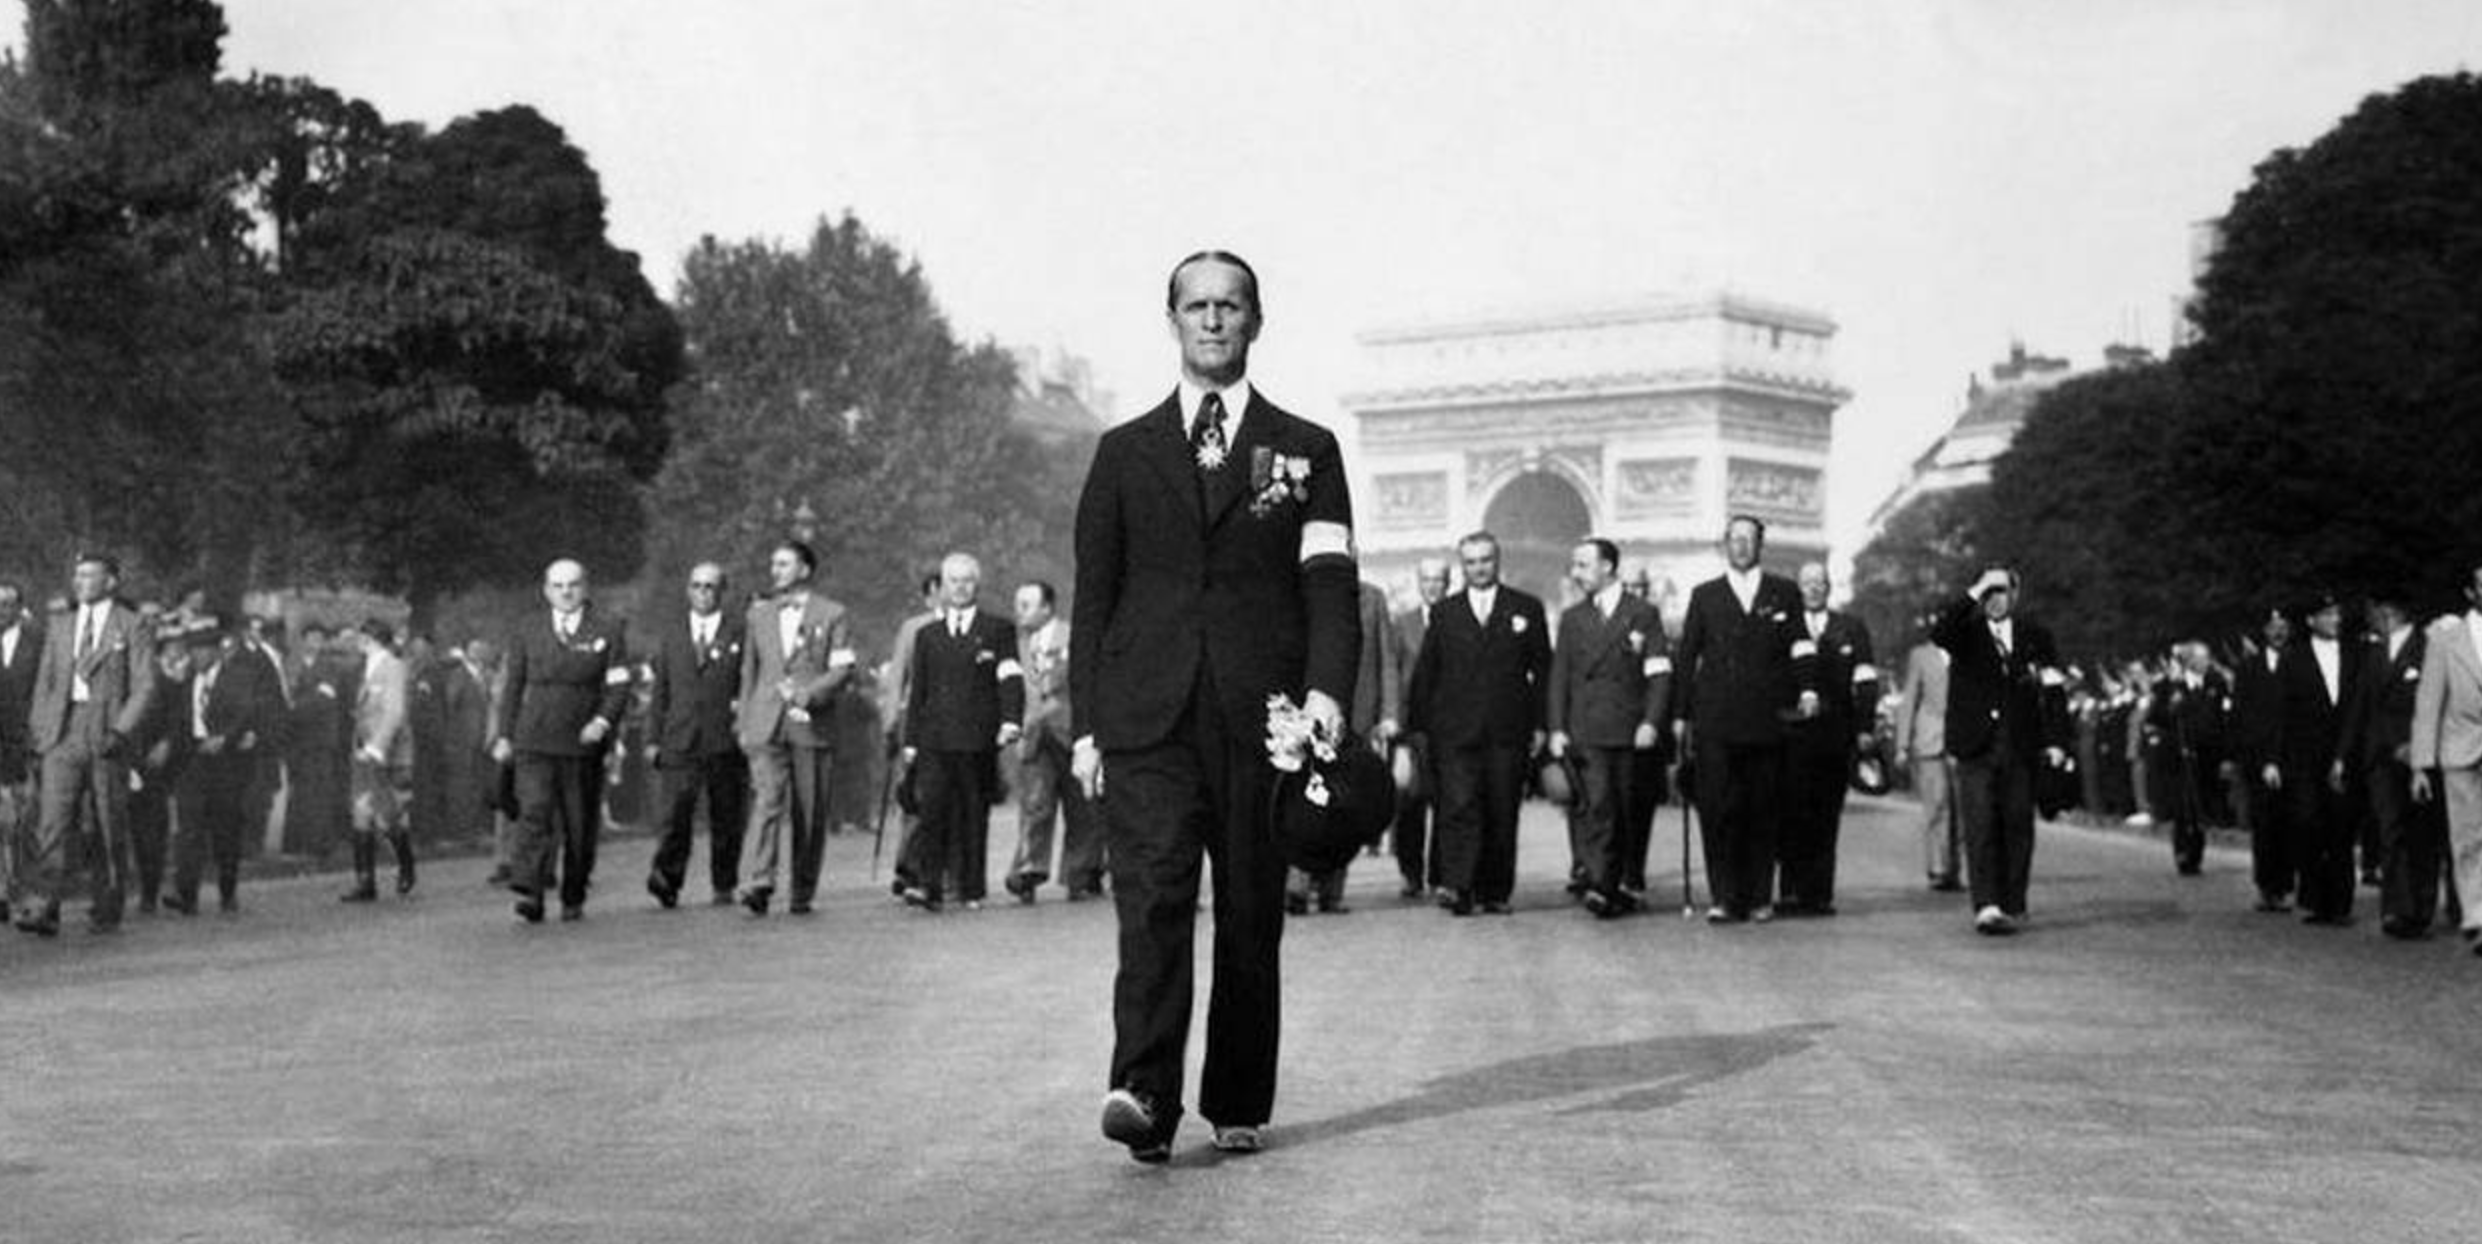 二战前的法国都做了什么?为何经济,军队强大,却难逃战败?